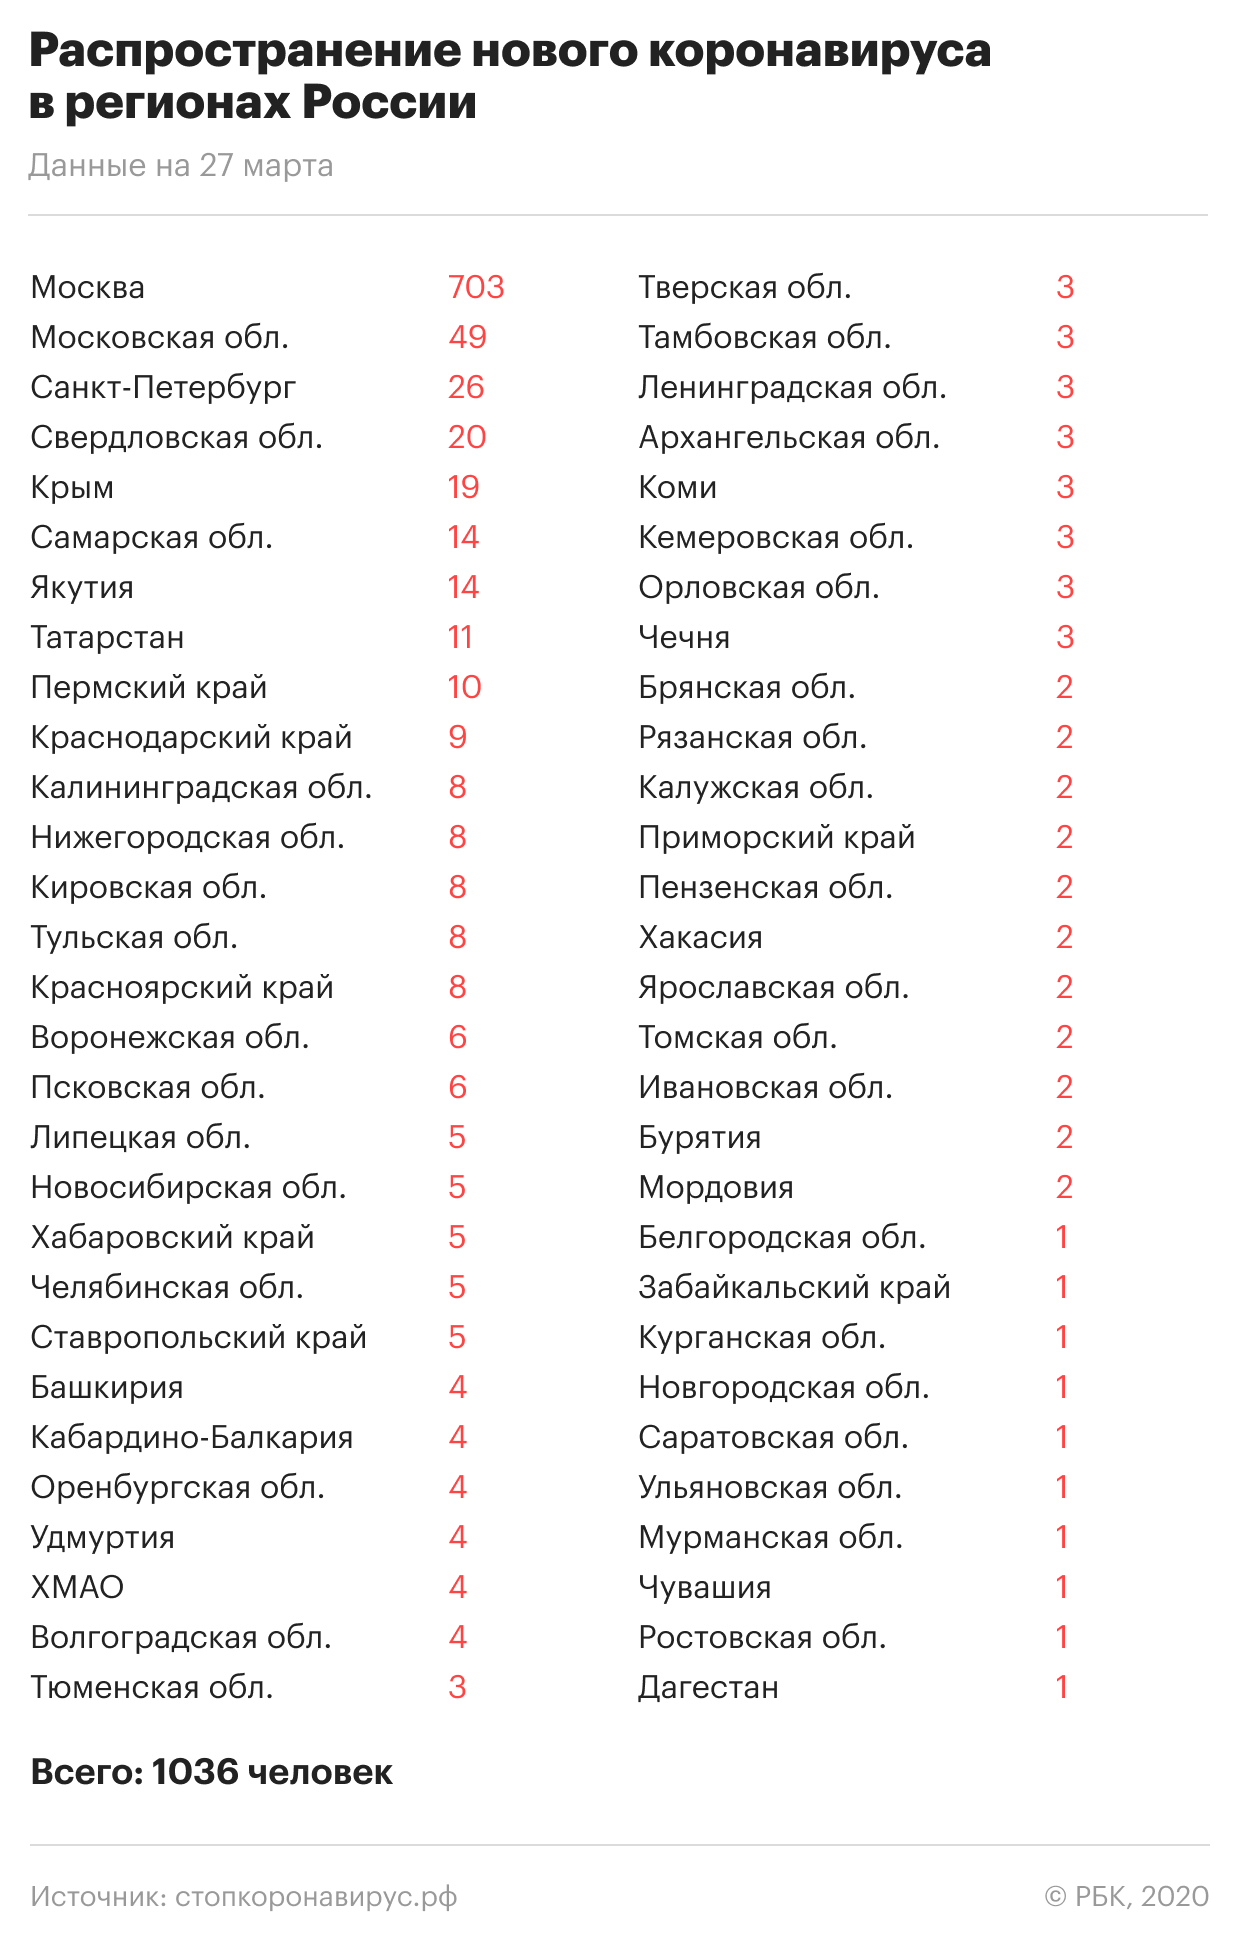 «Китайский коронавирус в России»: Где и сколько заболевших на сегодня, последние новости на 28.03.2020 — информация в режиме онлайн, главное к этому часу